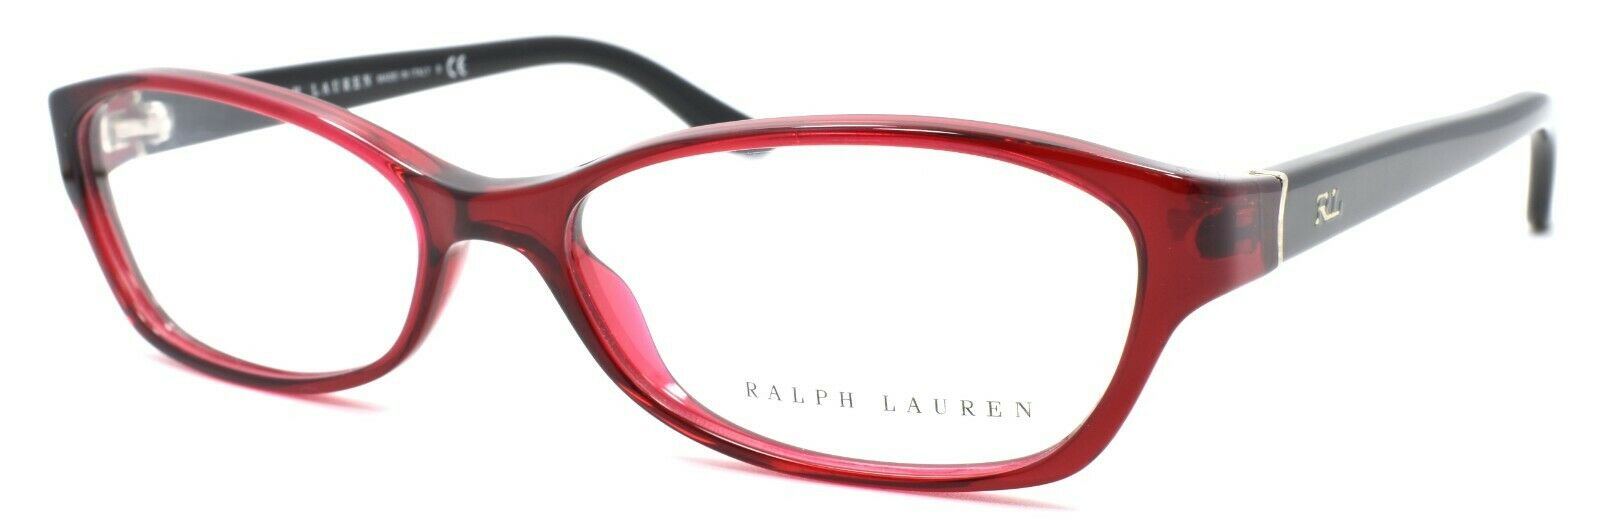 Ralph Lauren RL 6068 5008 Women's Eyeglasses Frames 53-15-130 Transpar